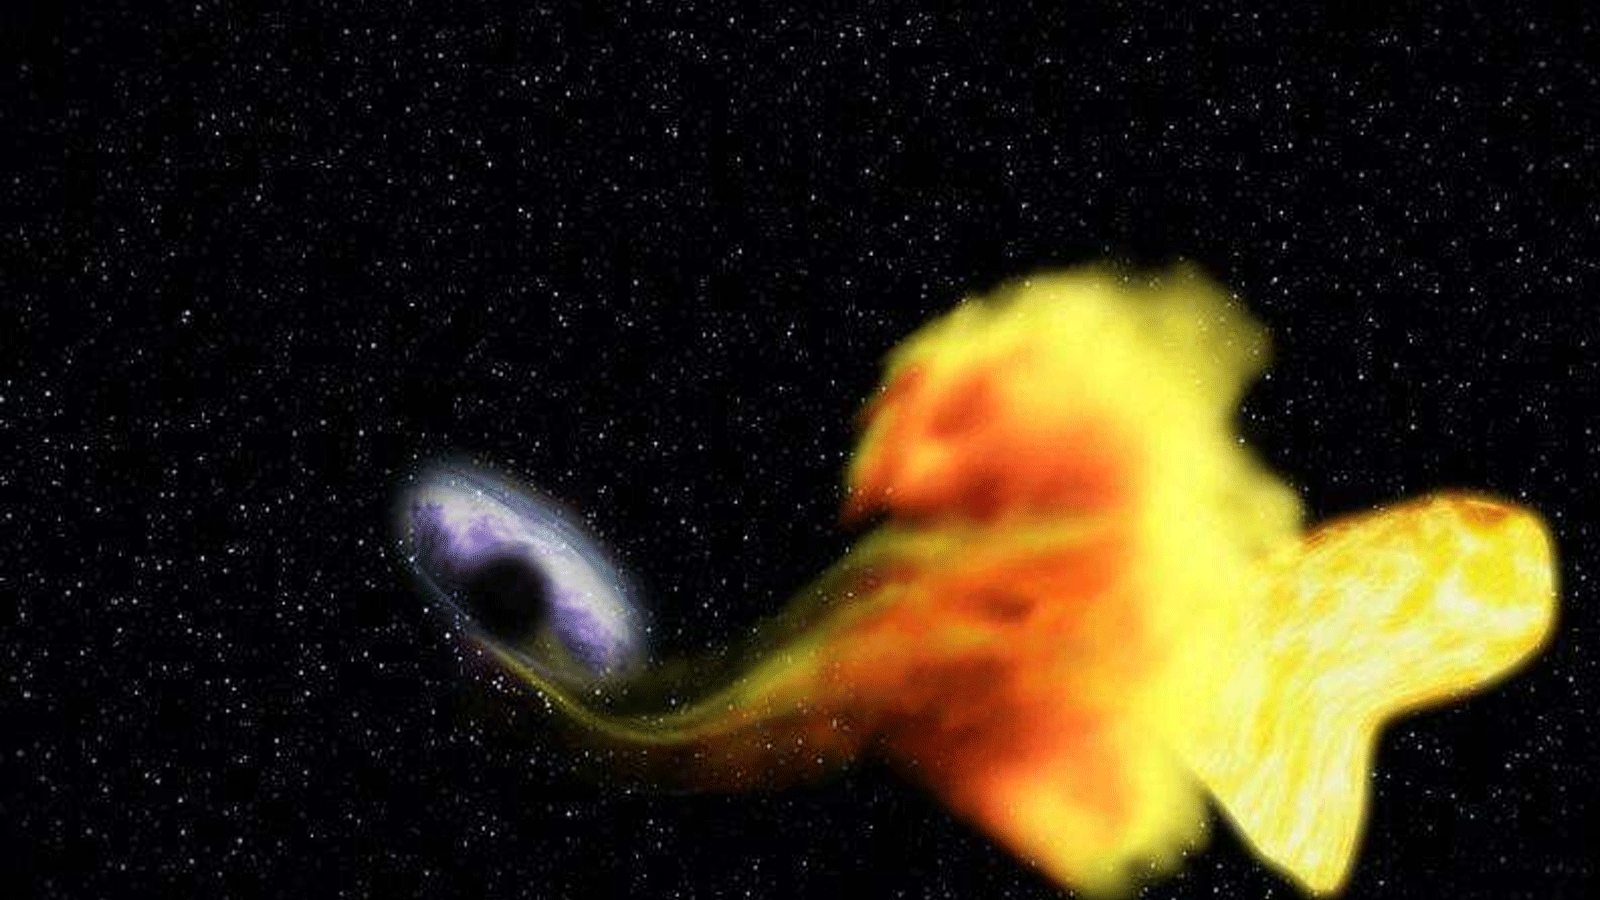 علماء من جامعة جونز هوبكنز حصلوا على لمحة أولية عن الثقب الأسود وهو يأكل النجم ثم يطلق توهجًا عالي السرعة